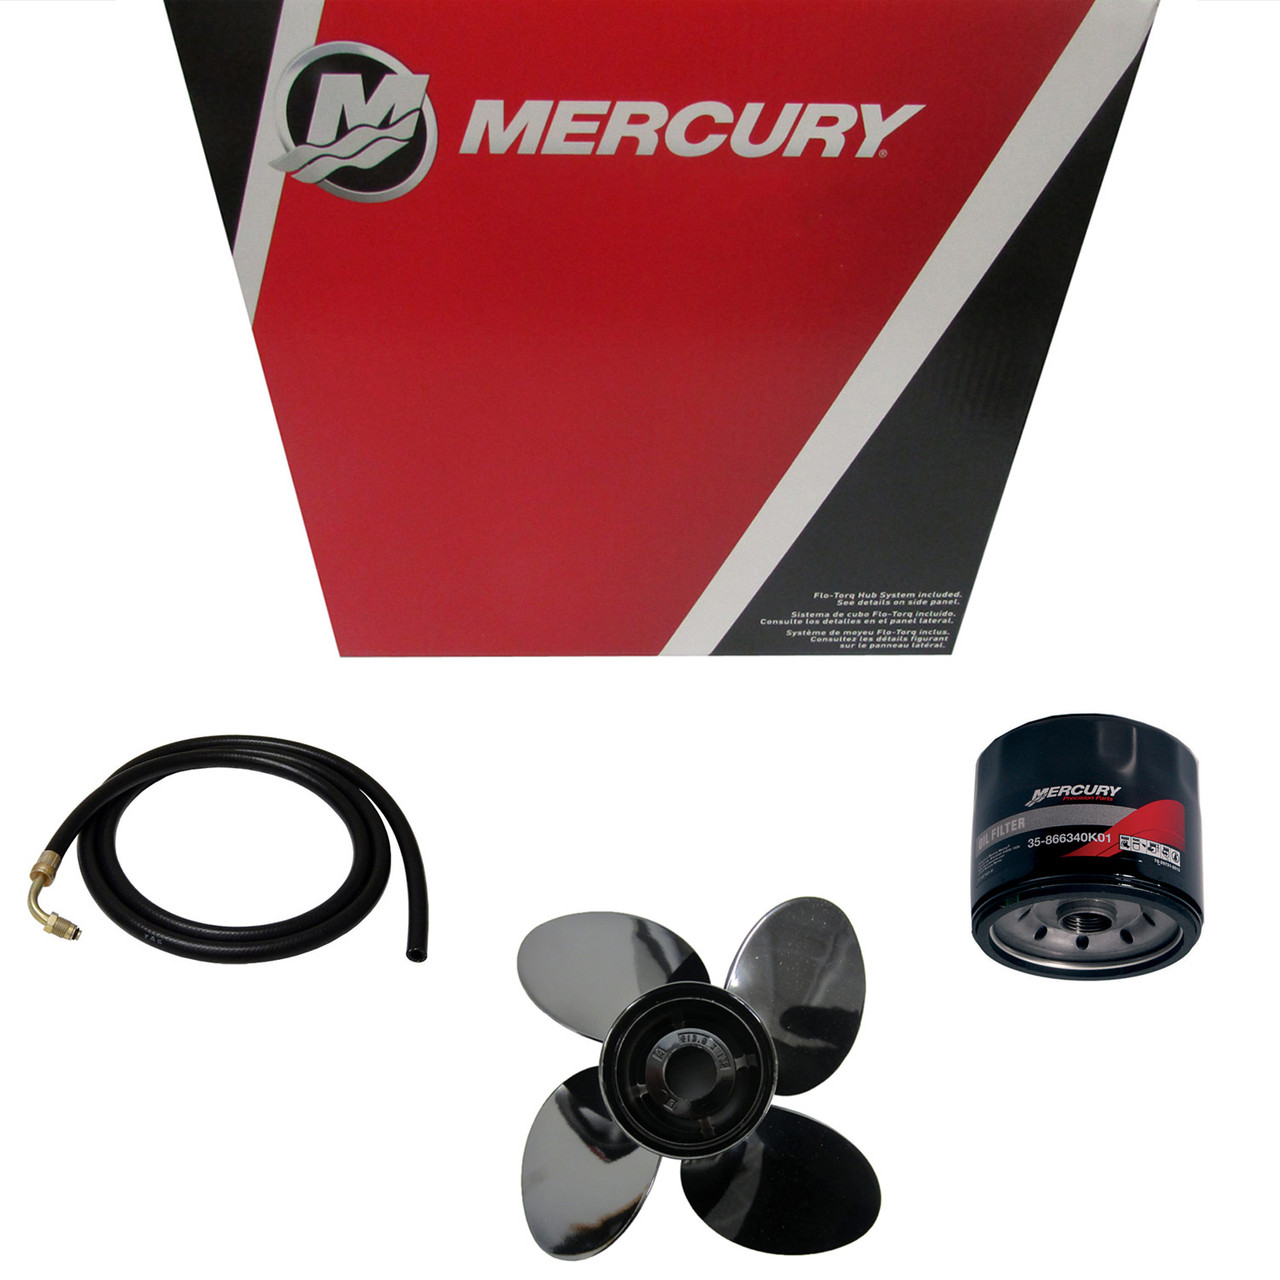 Mercury Marine / Mercruiser New OEM Carburetor, 824924T64